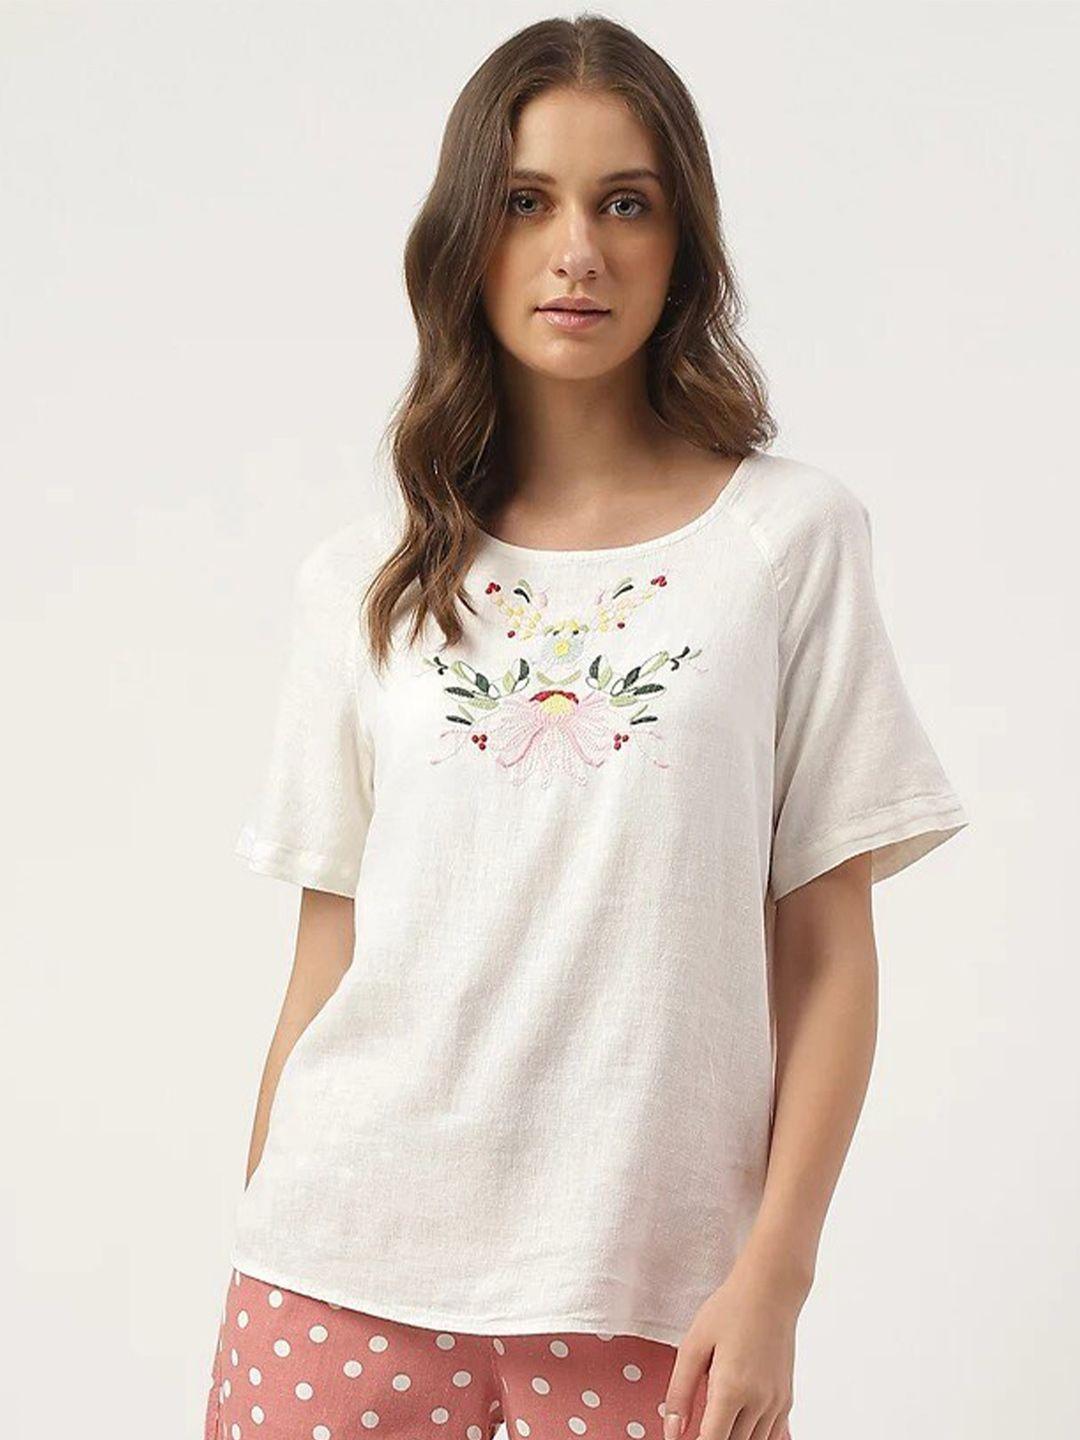 marks & spencer floral embroidered raglan sleeves top